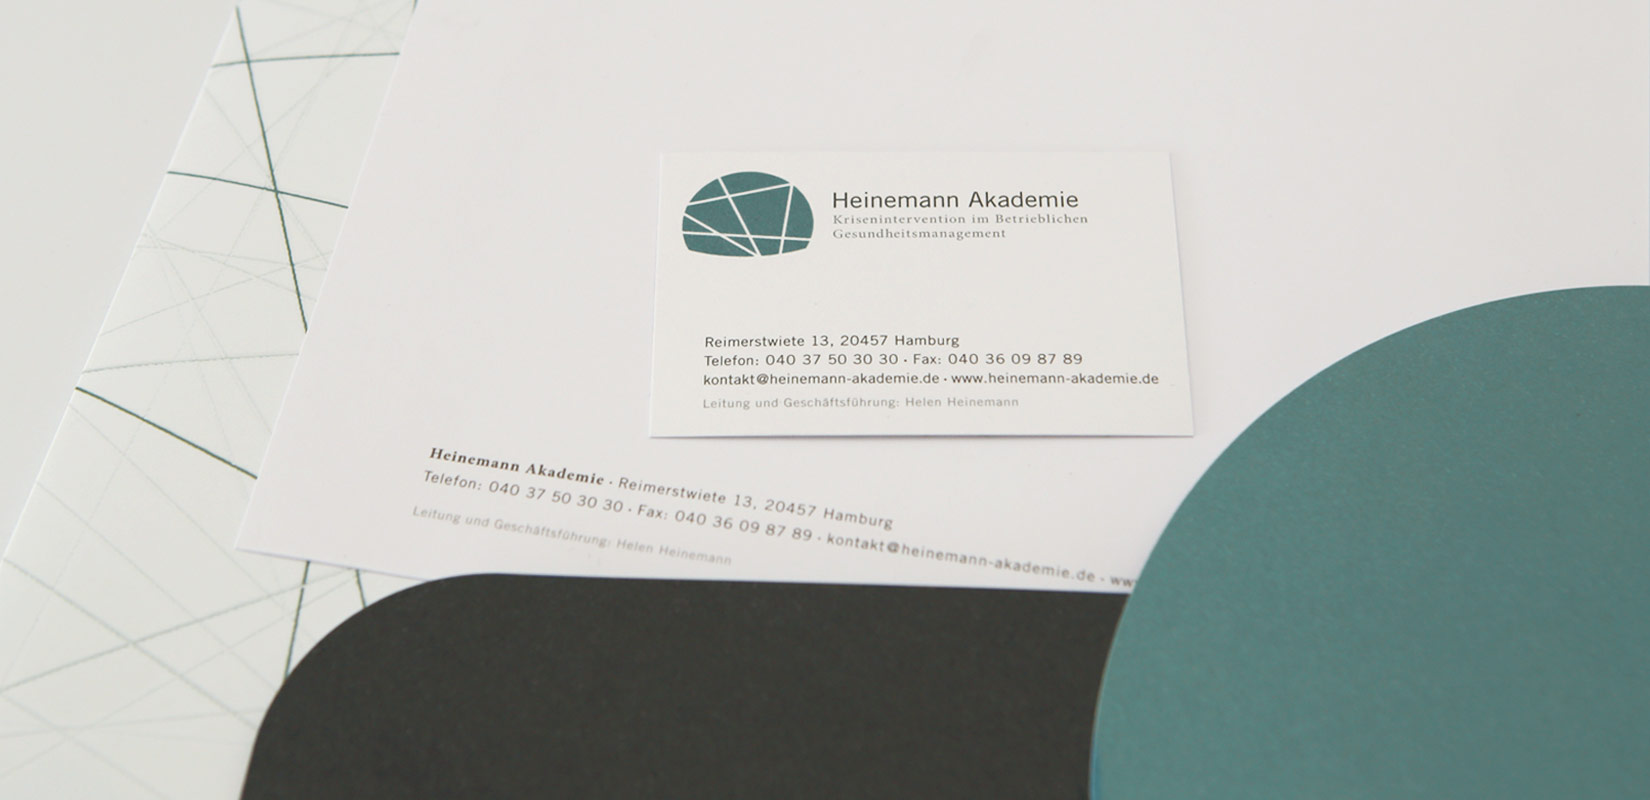 Heinemann Akademie – Prints